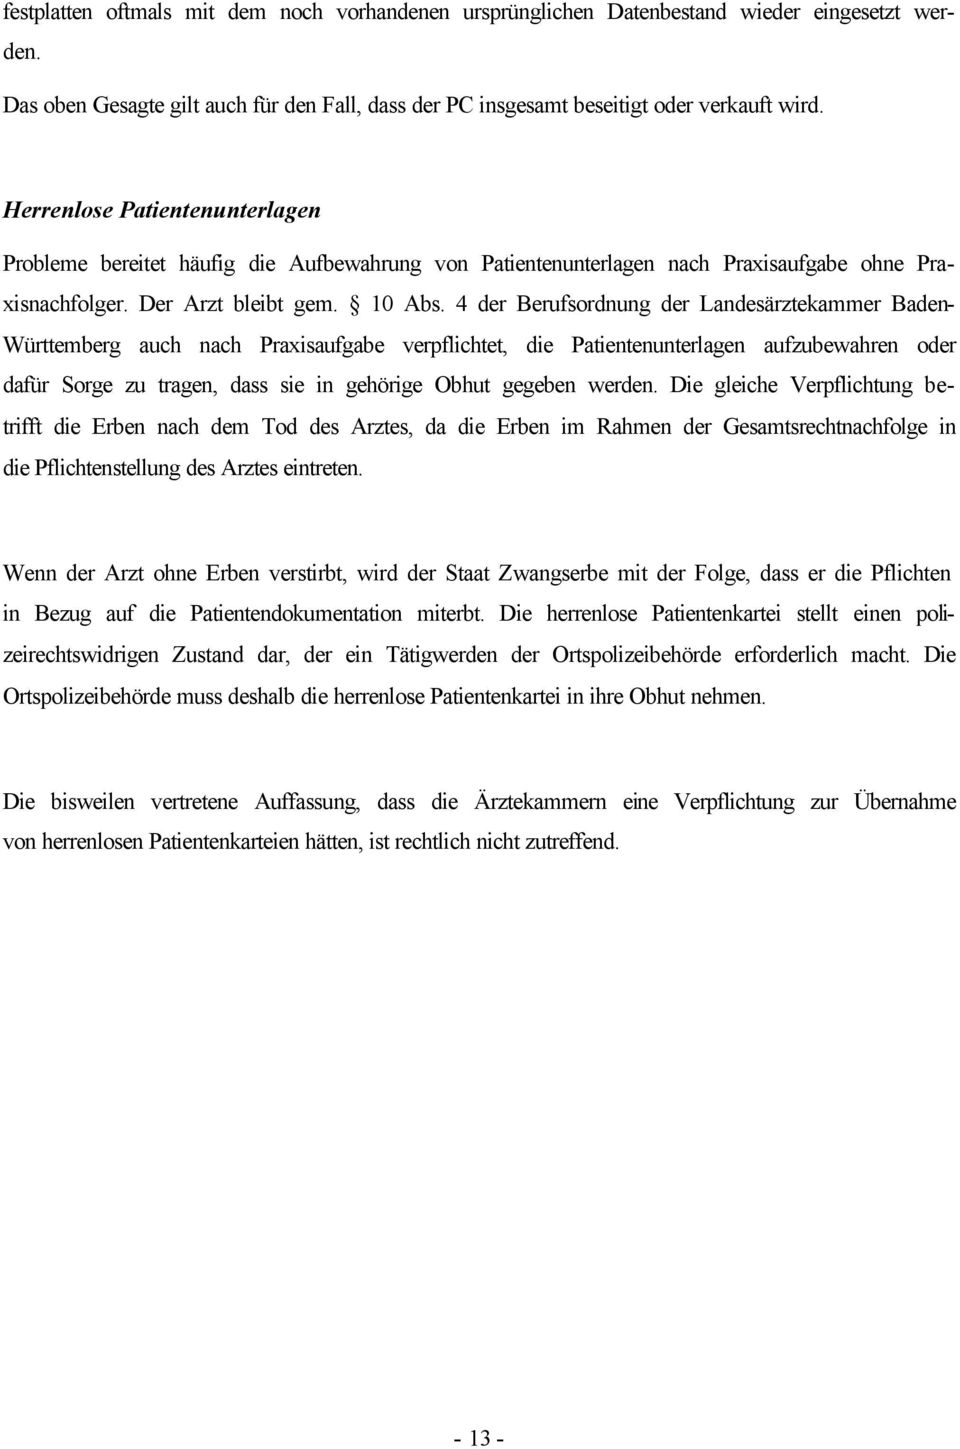 4 der Berufsordnung der Landesärztekammer Baden- Württemberg auch nach Praxisaufgabe verpflichtet, die Patientenunterlagen aufzubewahren oder dafür Sorge zu tragen, dass sie in gehörige Obhut gegeben